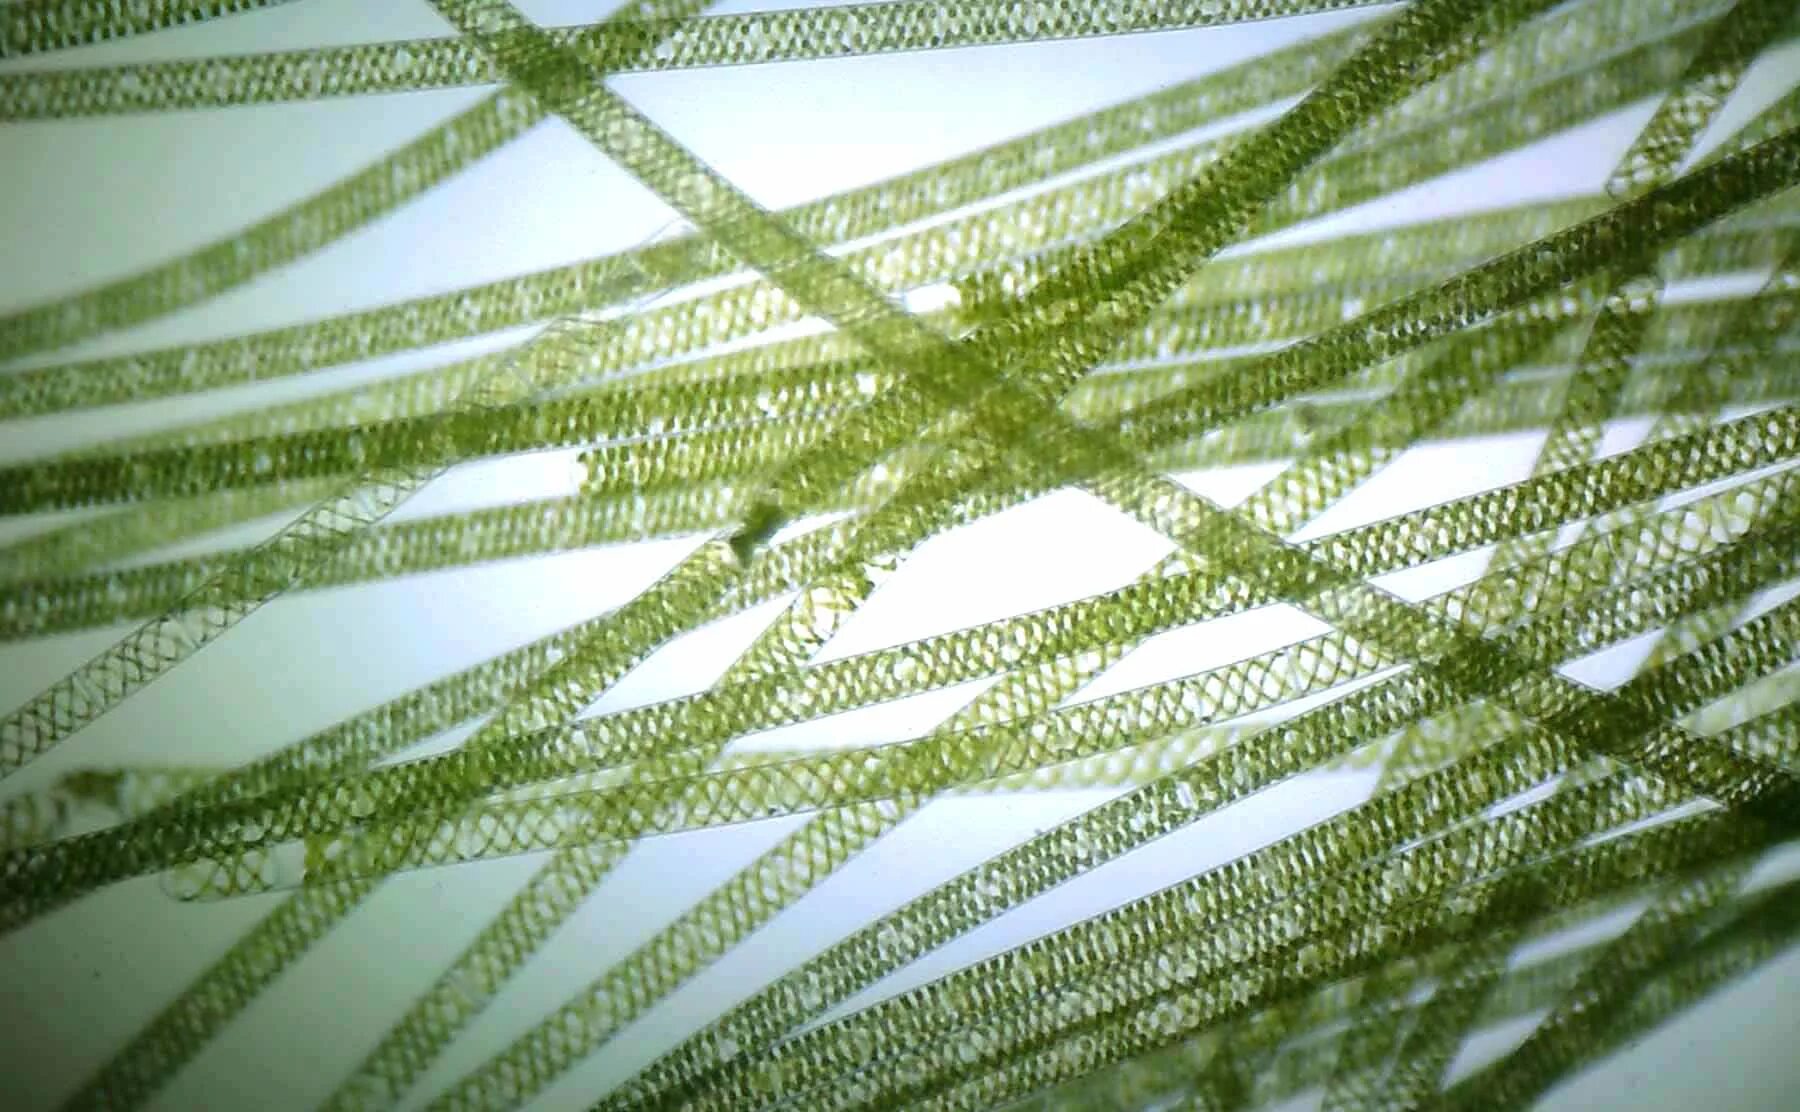 Нитчатая водоросль спирогира. Многоклеточная нитчатая зелёная водоросль спирогира. Водоросль спирогира под микроскопом. Многоклеточные зеленые водоросли спирогира.